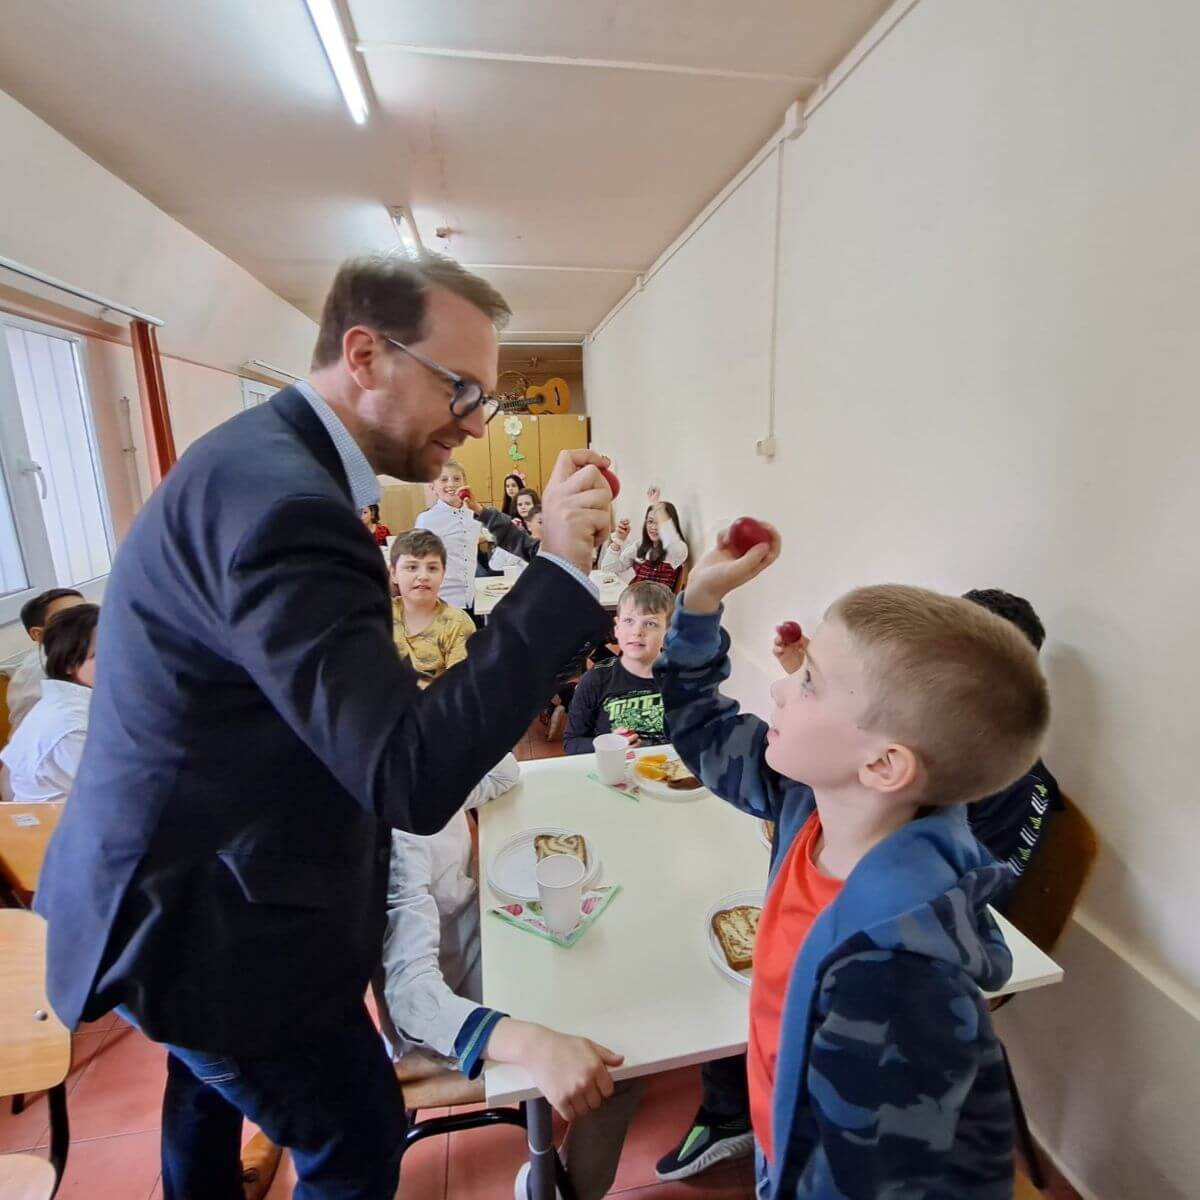 Dominic Fritz: 60 de copii vin la Centrul de Zi Sfântul Nicolae, o a doua casă pentru ei